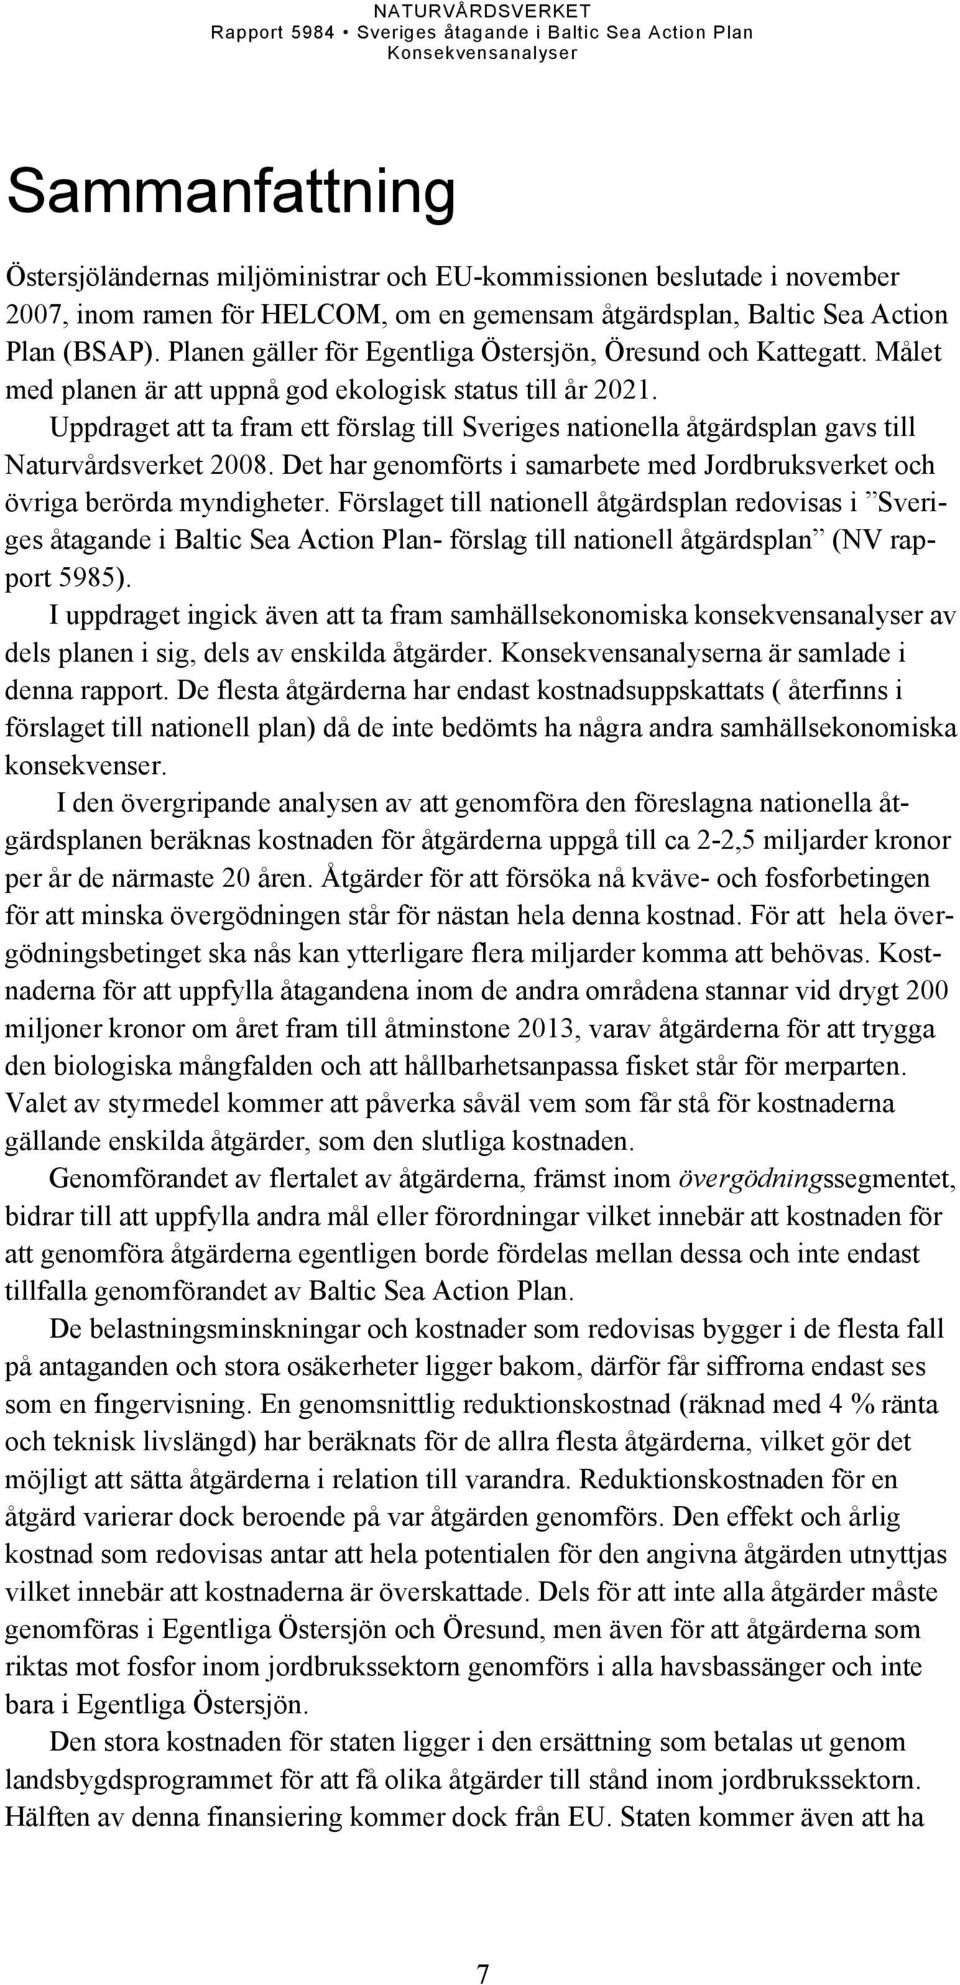 Uppdraget att ta fram ett förslag till Sveriges nationella åtgärdsplan gavs till Naturvårdsverket 2008. Det har genomförts i samarbete med Jordbruksverket och övriga berörda myndigheter.